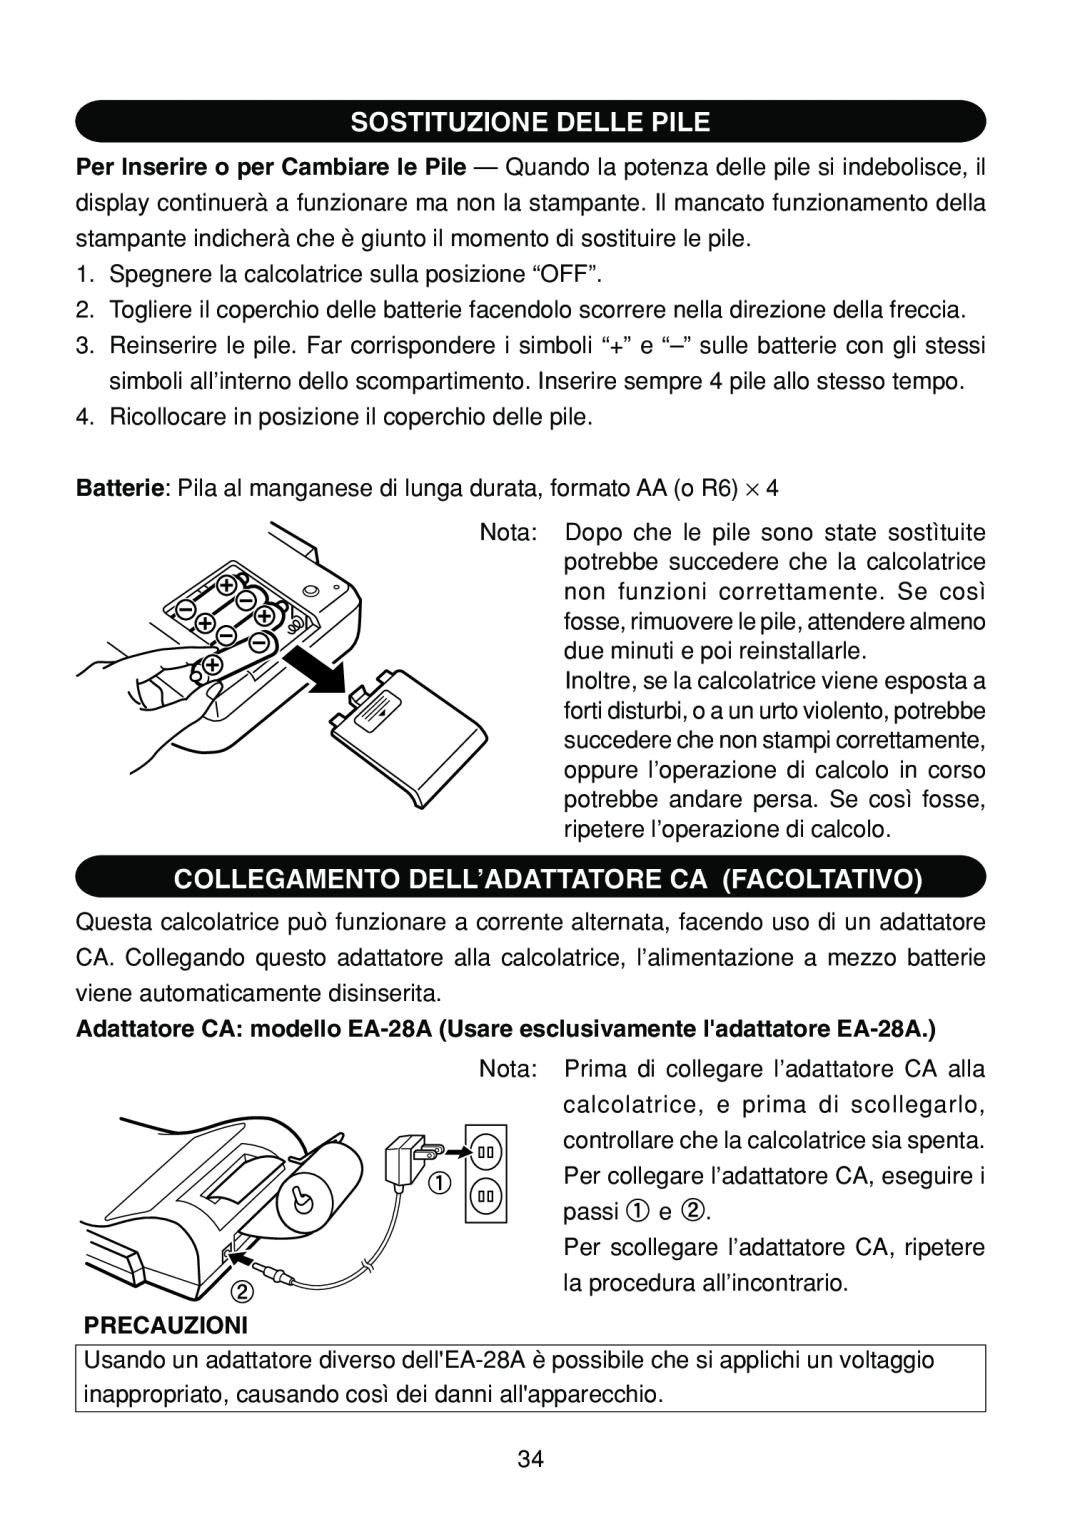 Sharp EL-1801C operation manual Sostituzione Delle Pile, Collegamento Dell’Adattatore Ca Facoltativo, Precauzioni 